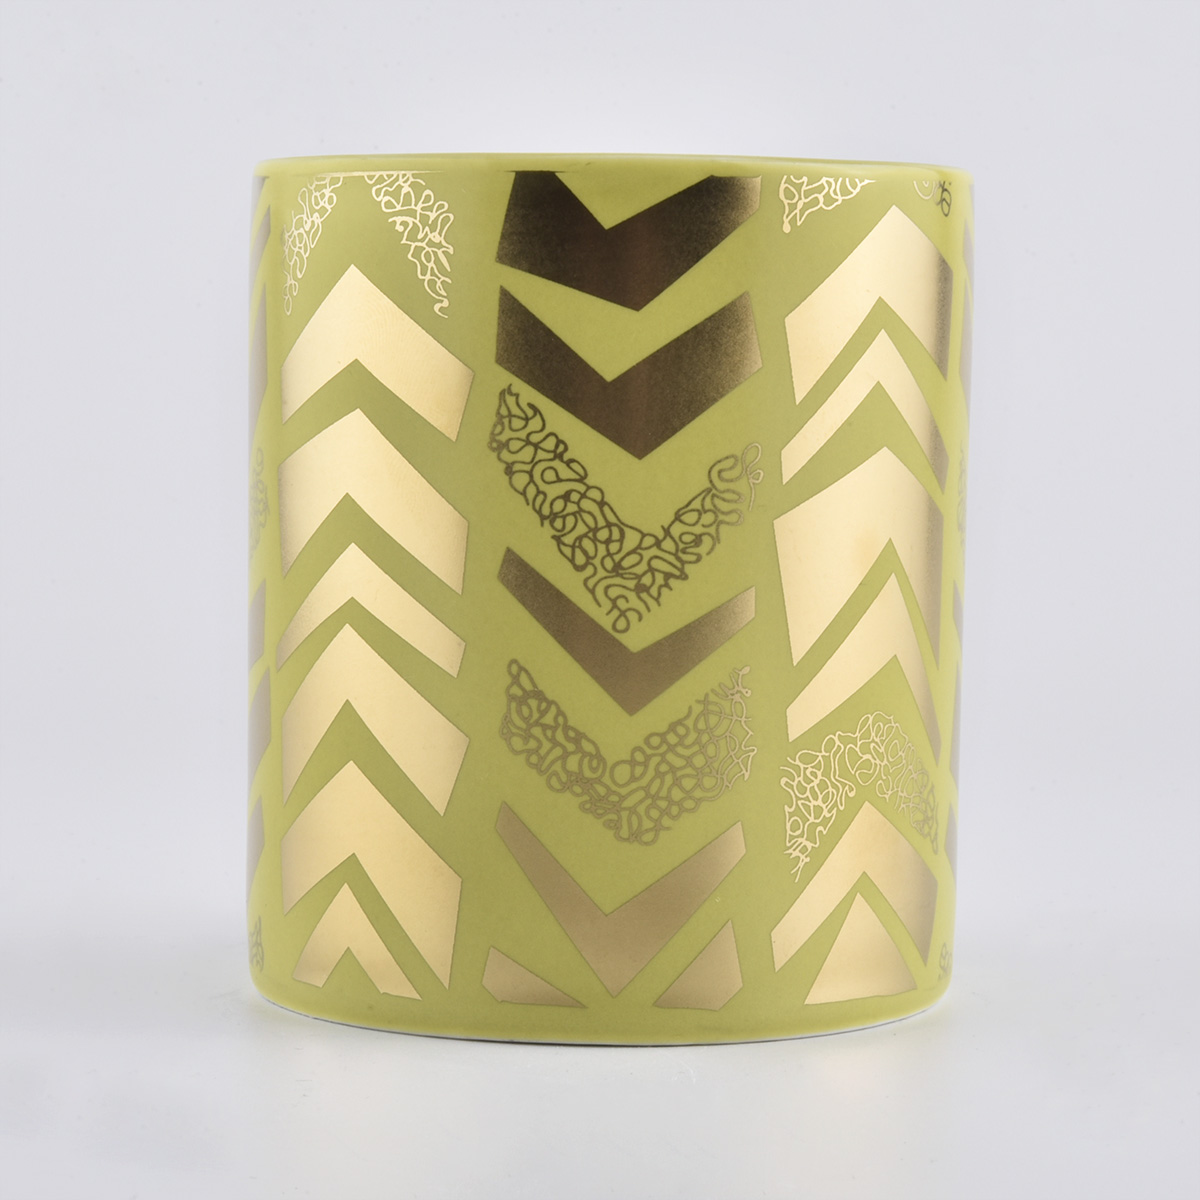 Decalcomania oro personalizzata su vasi di candele in ceramica